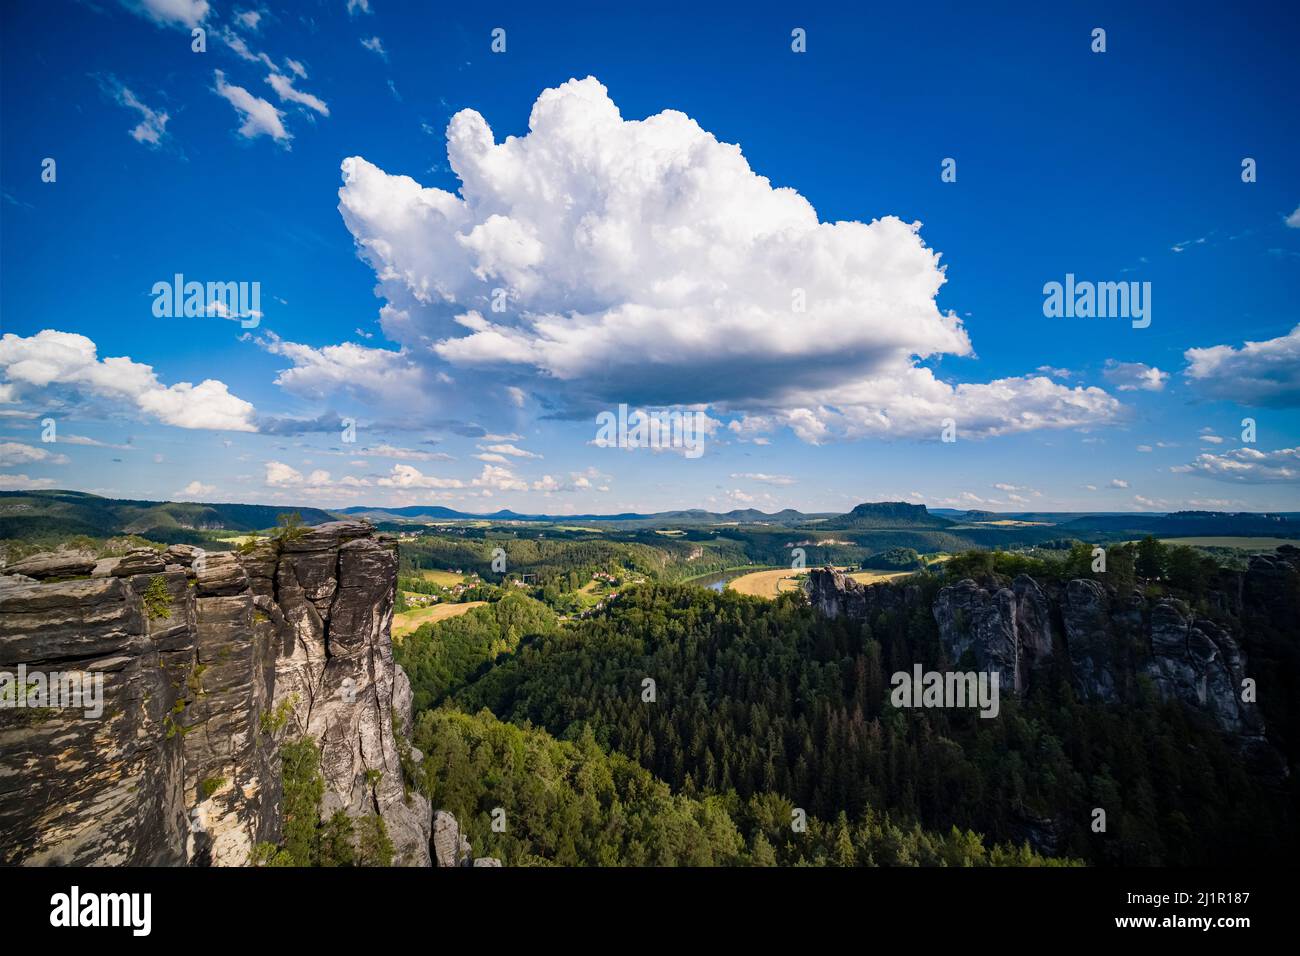 Paisaje con formaciones rocosas, la cumbre Hintere Gans y el valle del Elba en la zona de Rathen del Parque Nacional de la Suiza sajona. Foto de stock